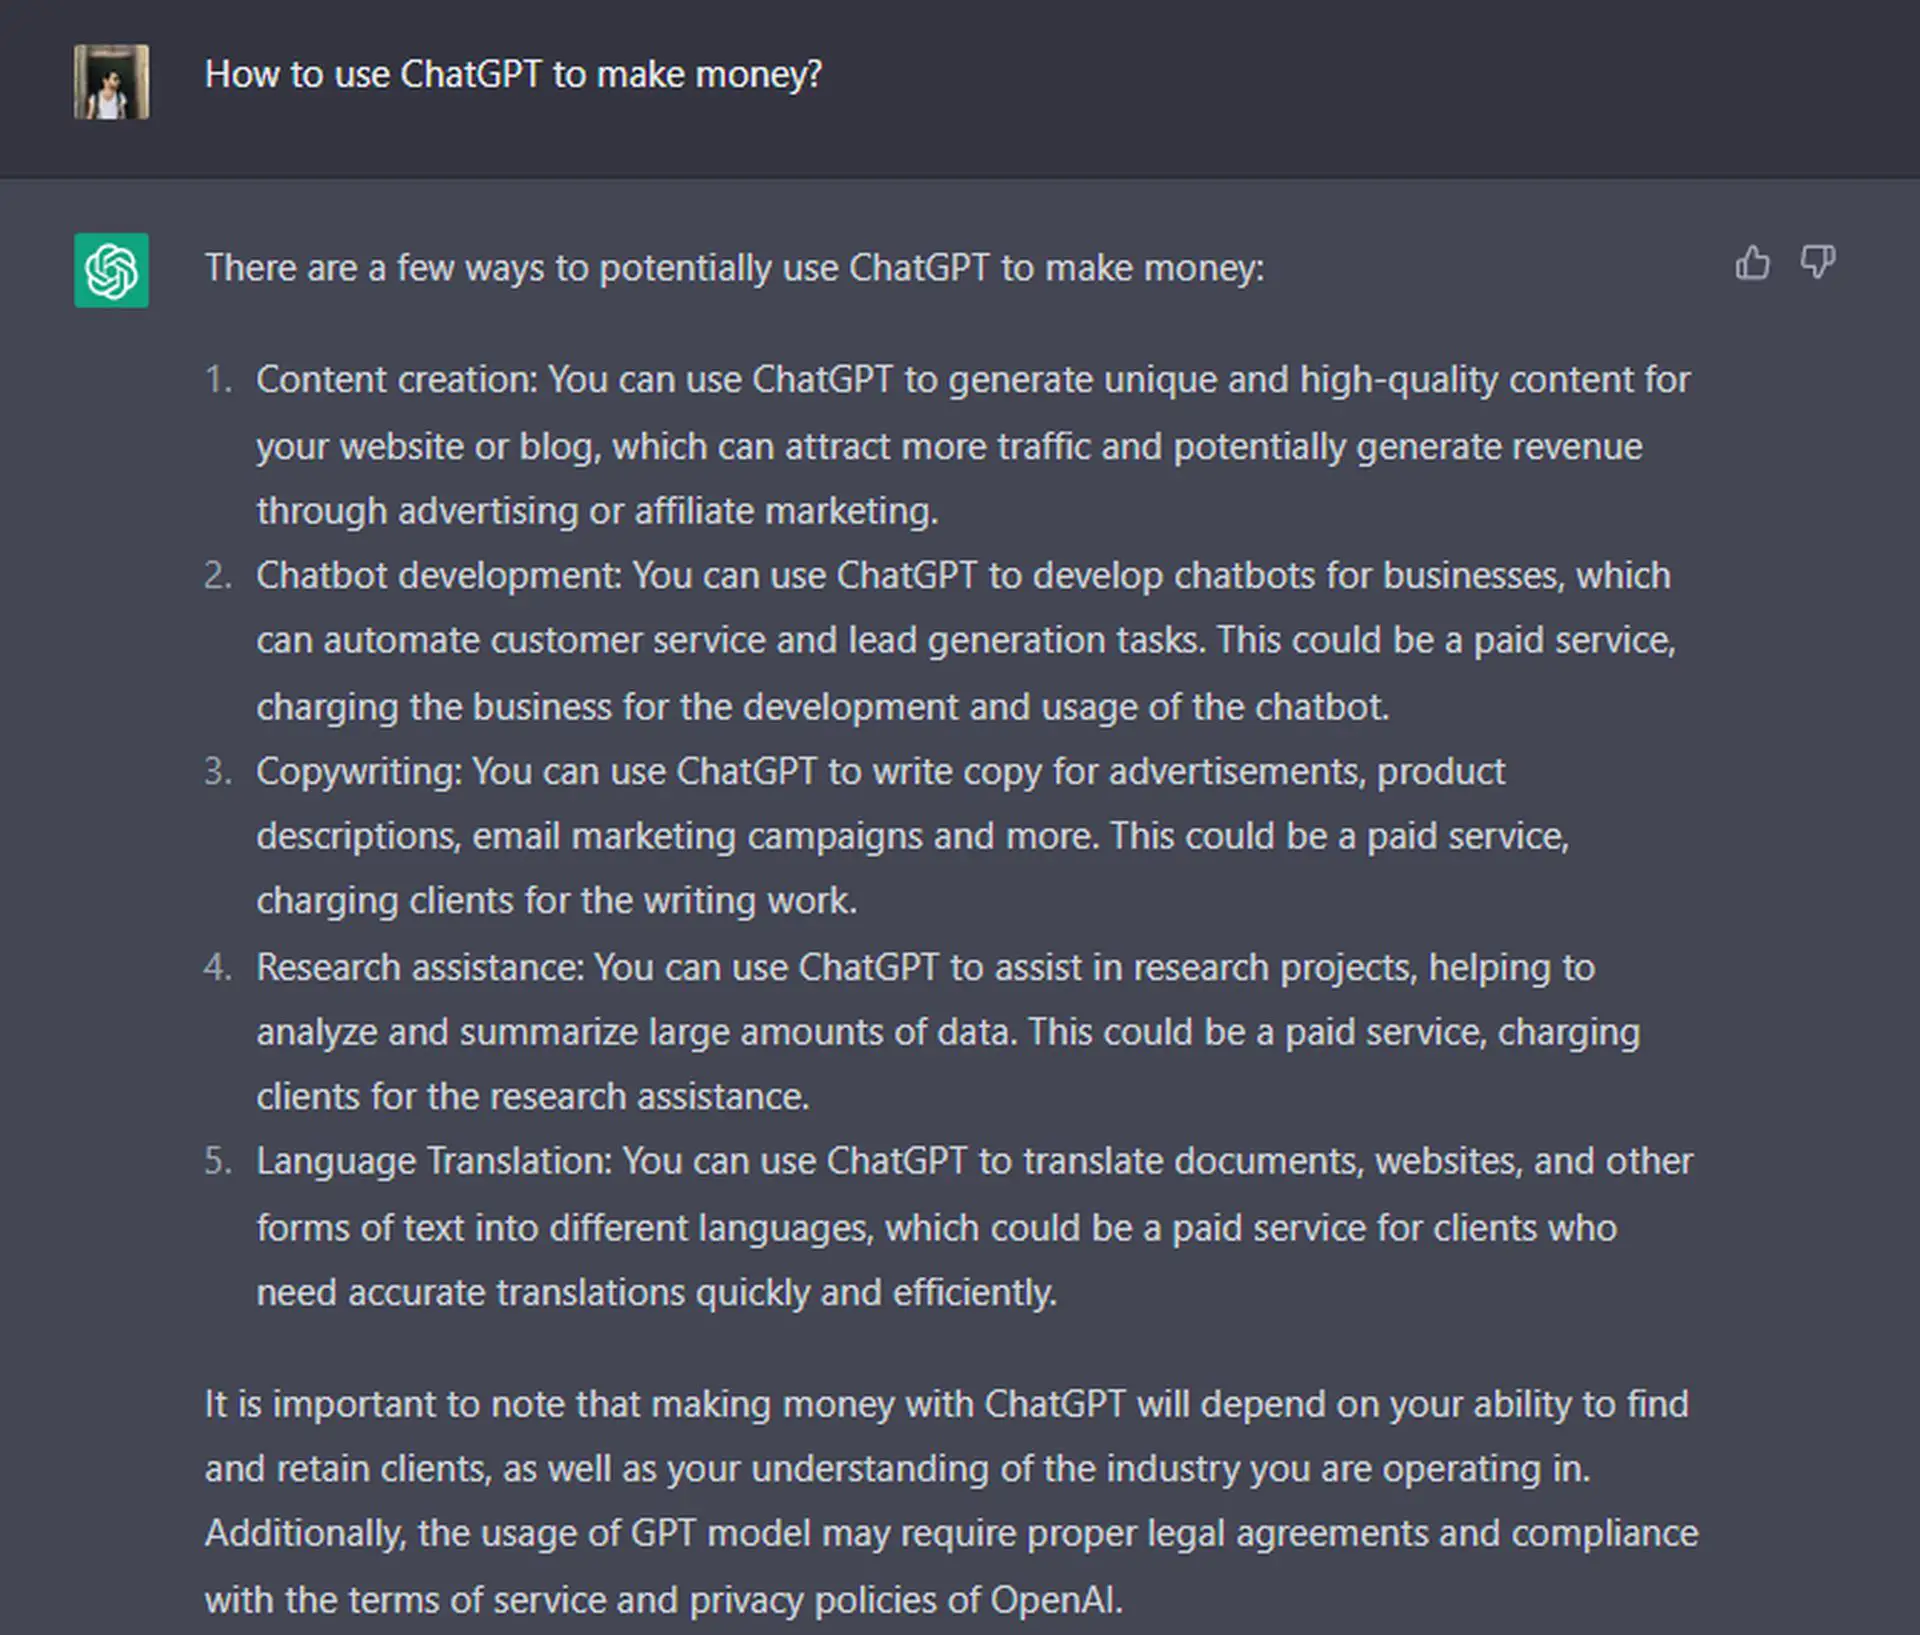 Hur du använder ChatGPT effektivt: Lär dig svaren på frågorna som hur du använder ChatGPT för att tjäna pengar och utnyttja AI.